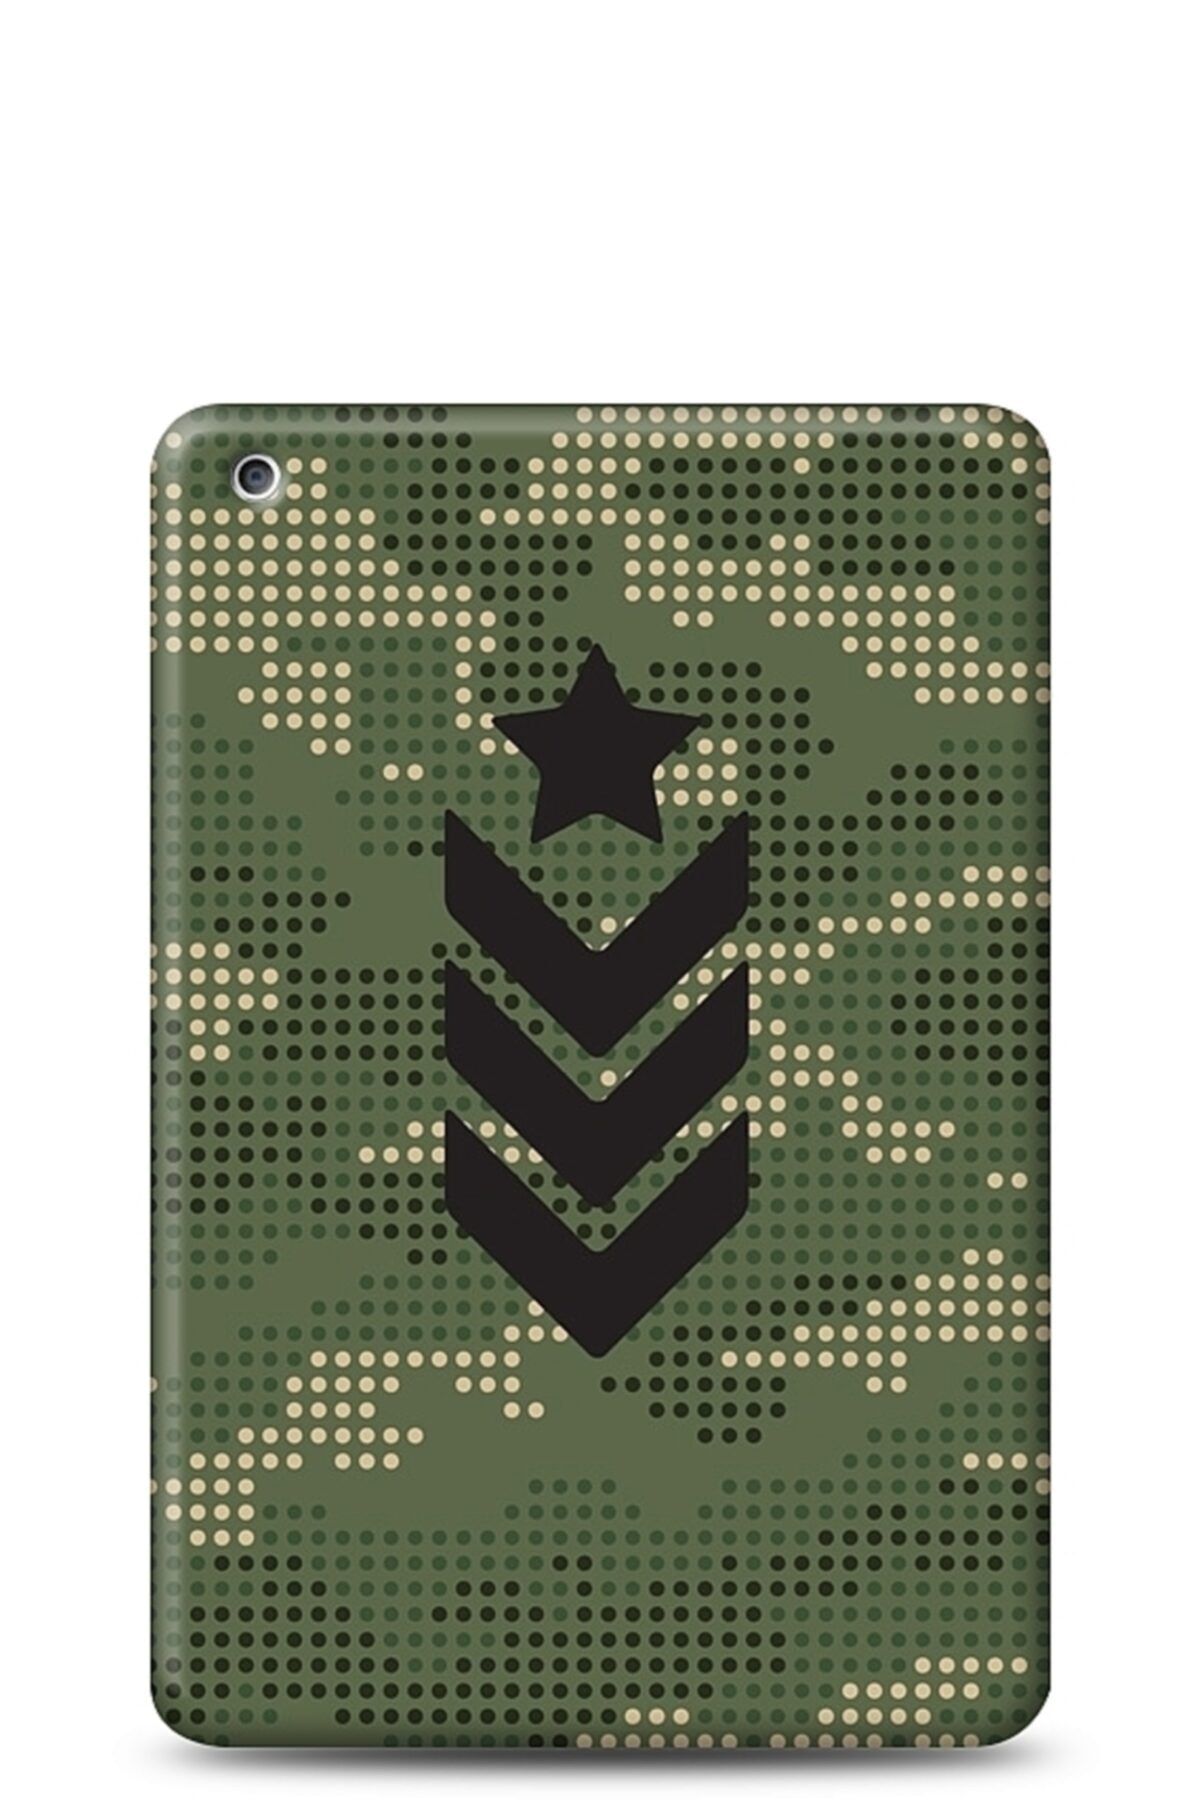 Eiroo Ipad Mini 2 Camouflage Kılıf